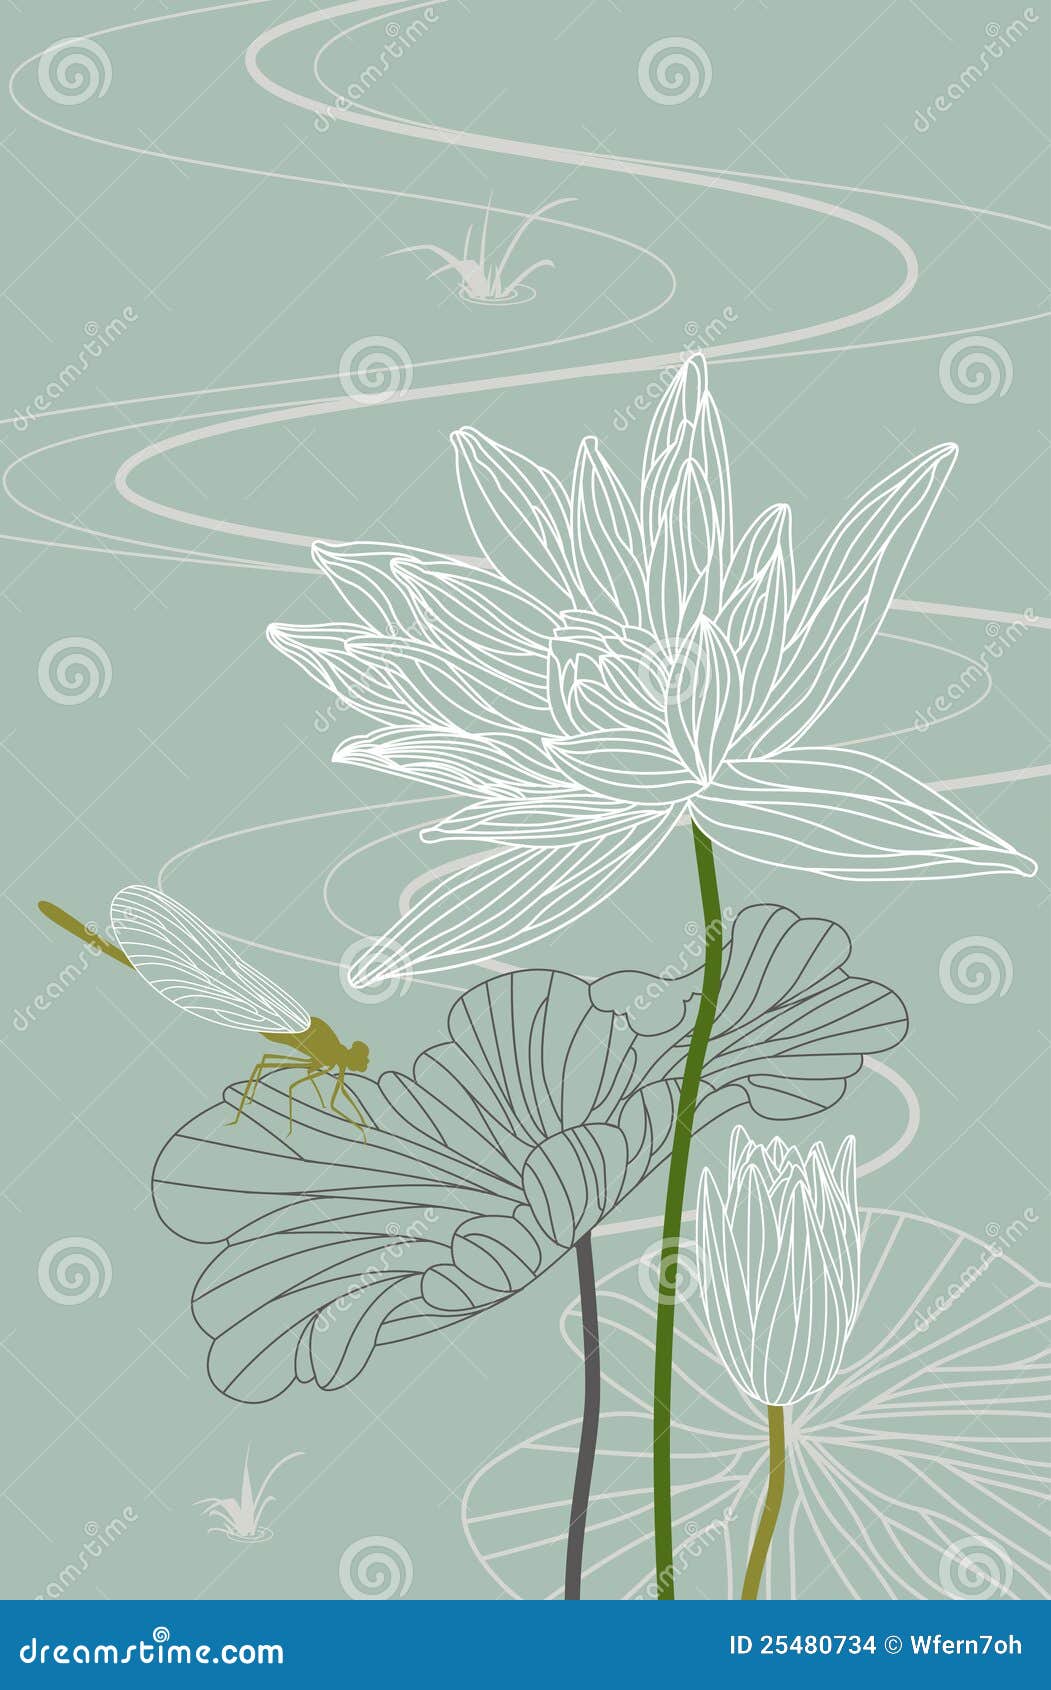 Lotus. Waterlelie. Libel. Vector. Illustratie. Libel op een lotusbloemblad met de bloem van de bloesemlotusbloem